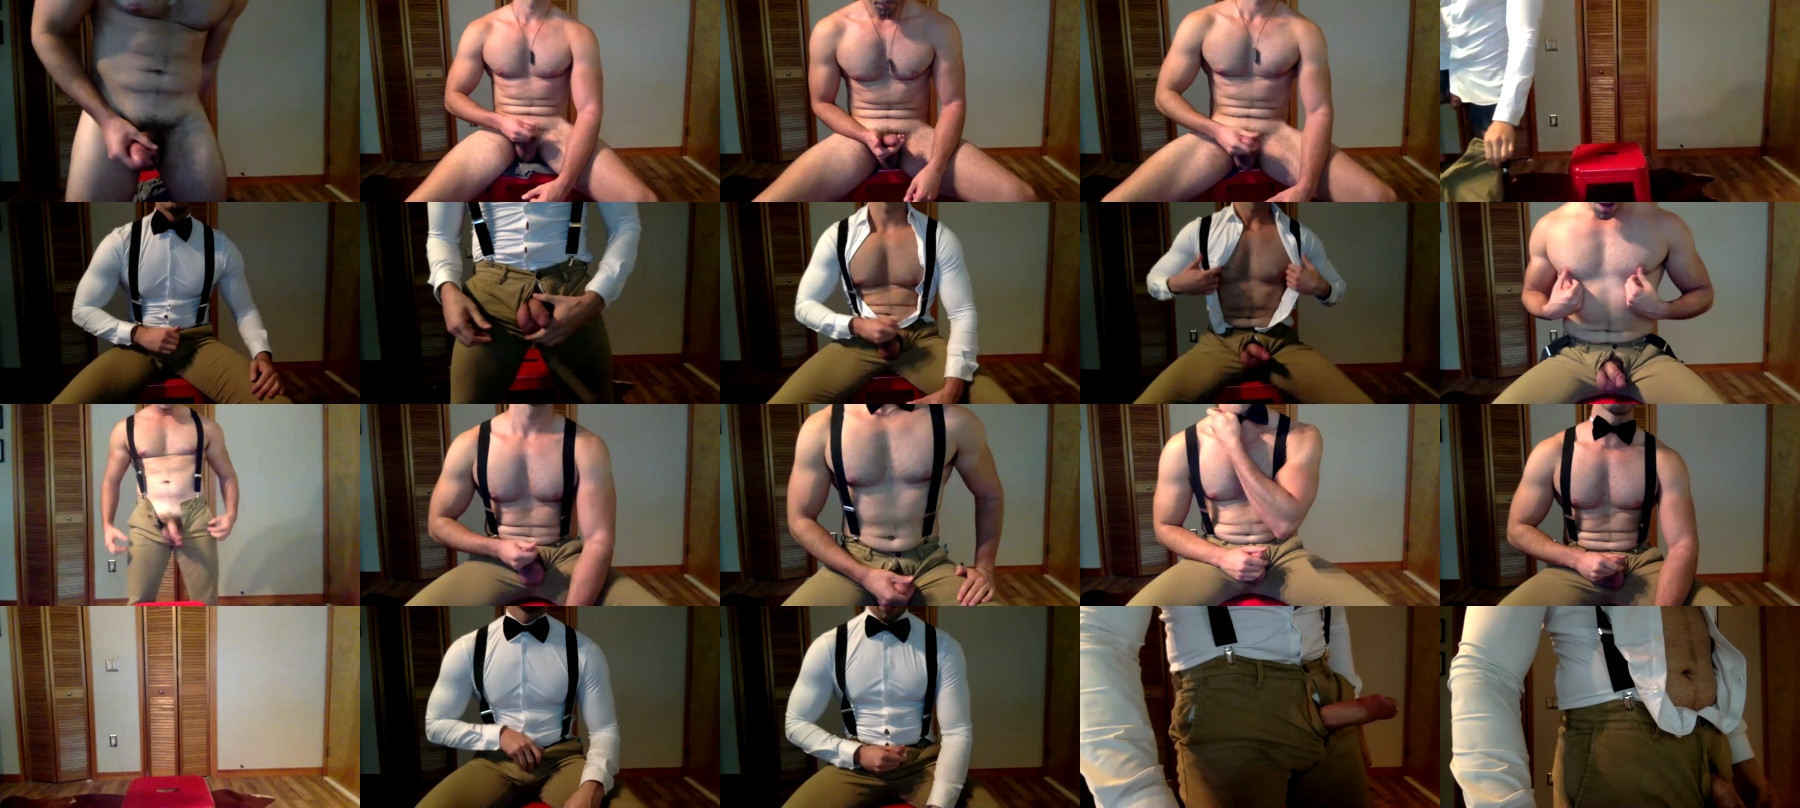 Unzipped26  28-06-2021 Male Webcam